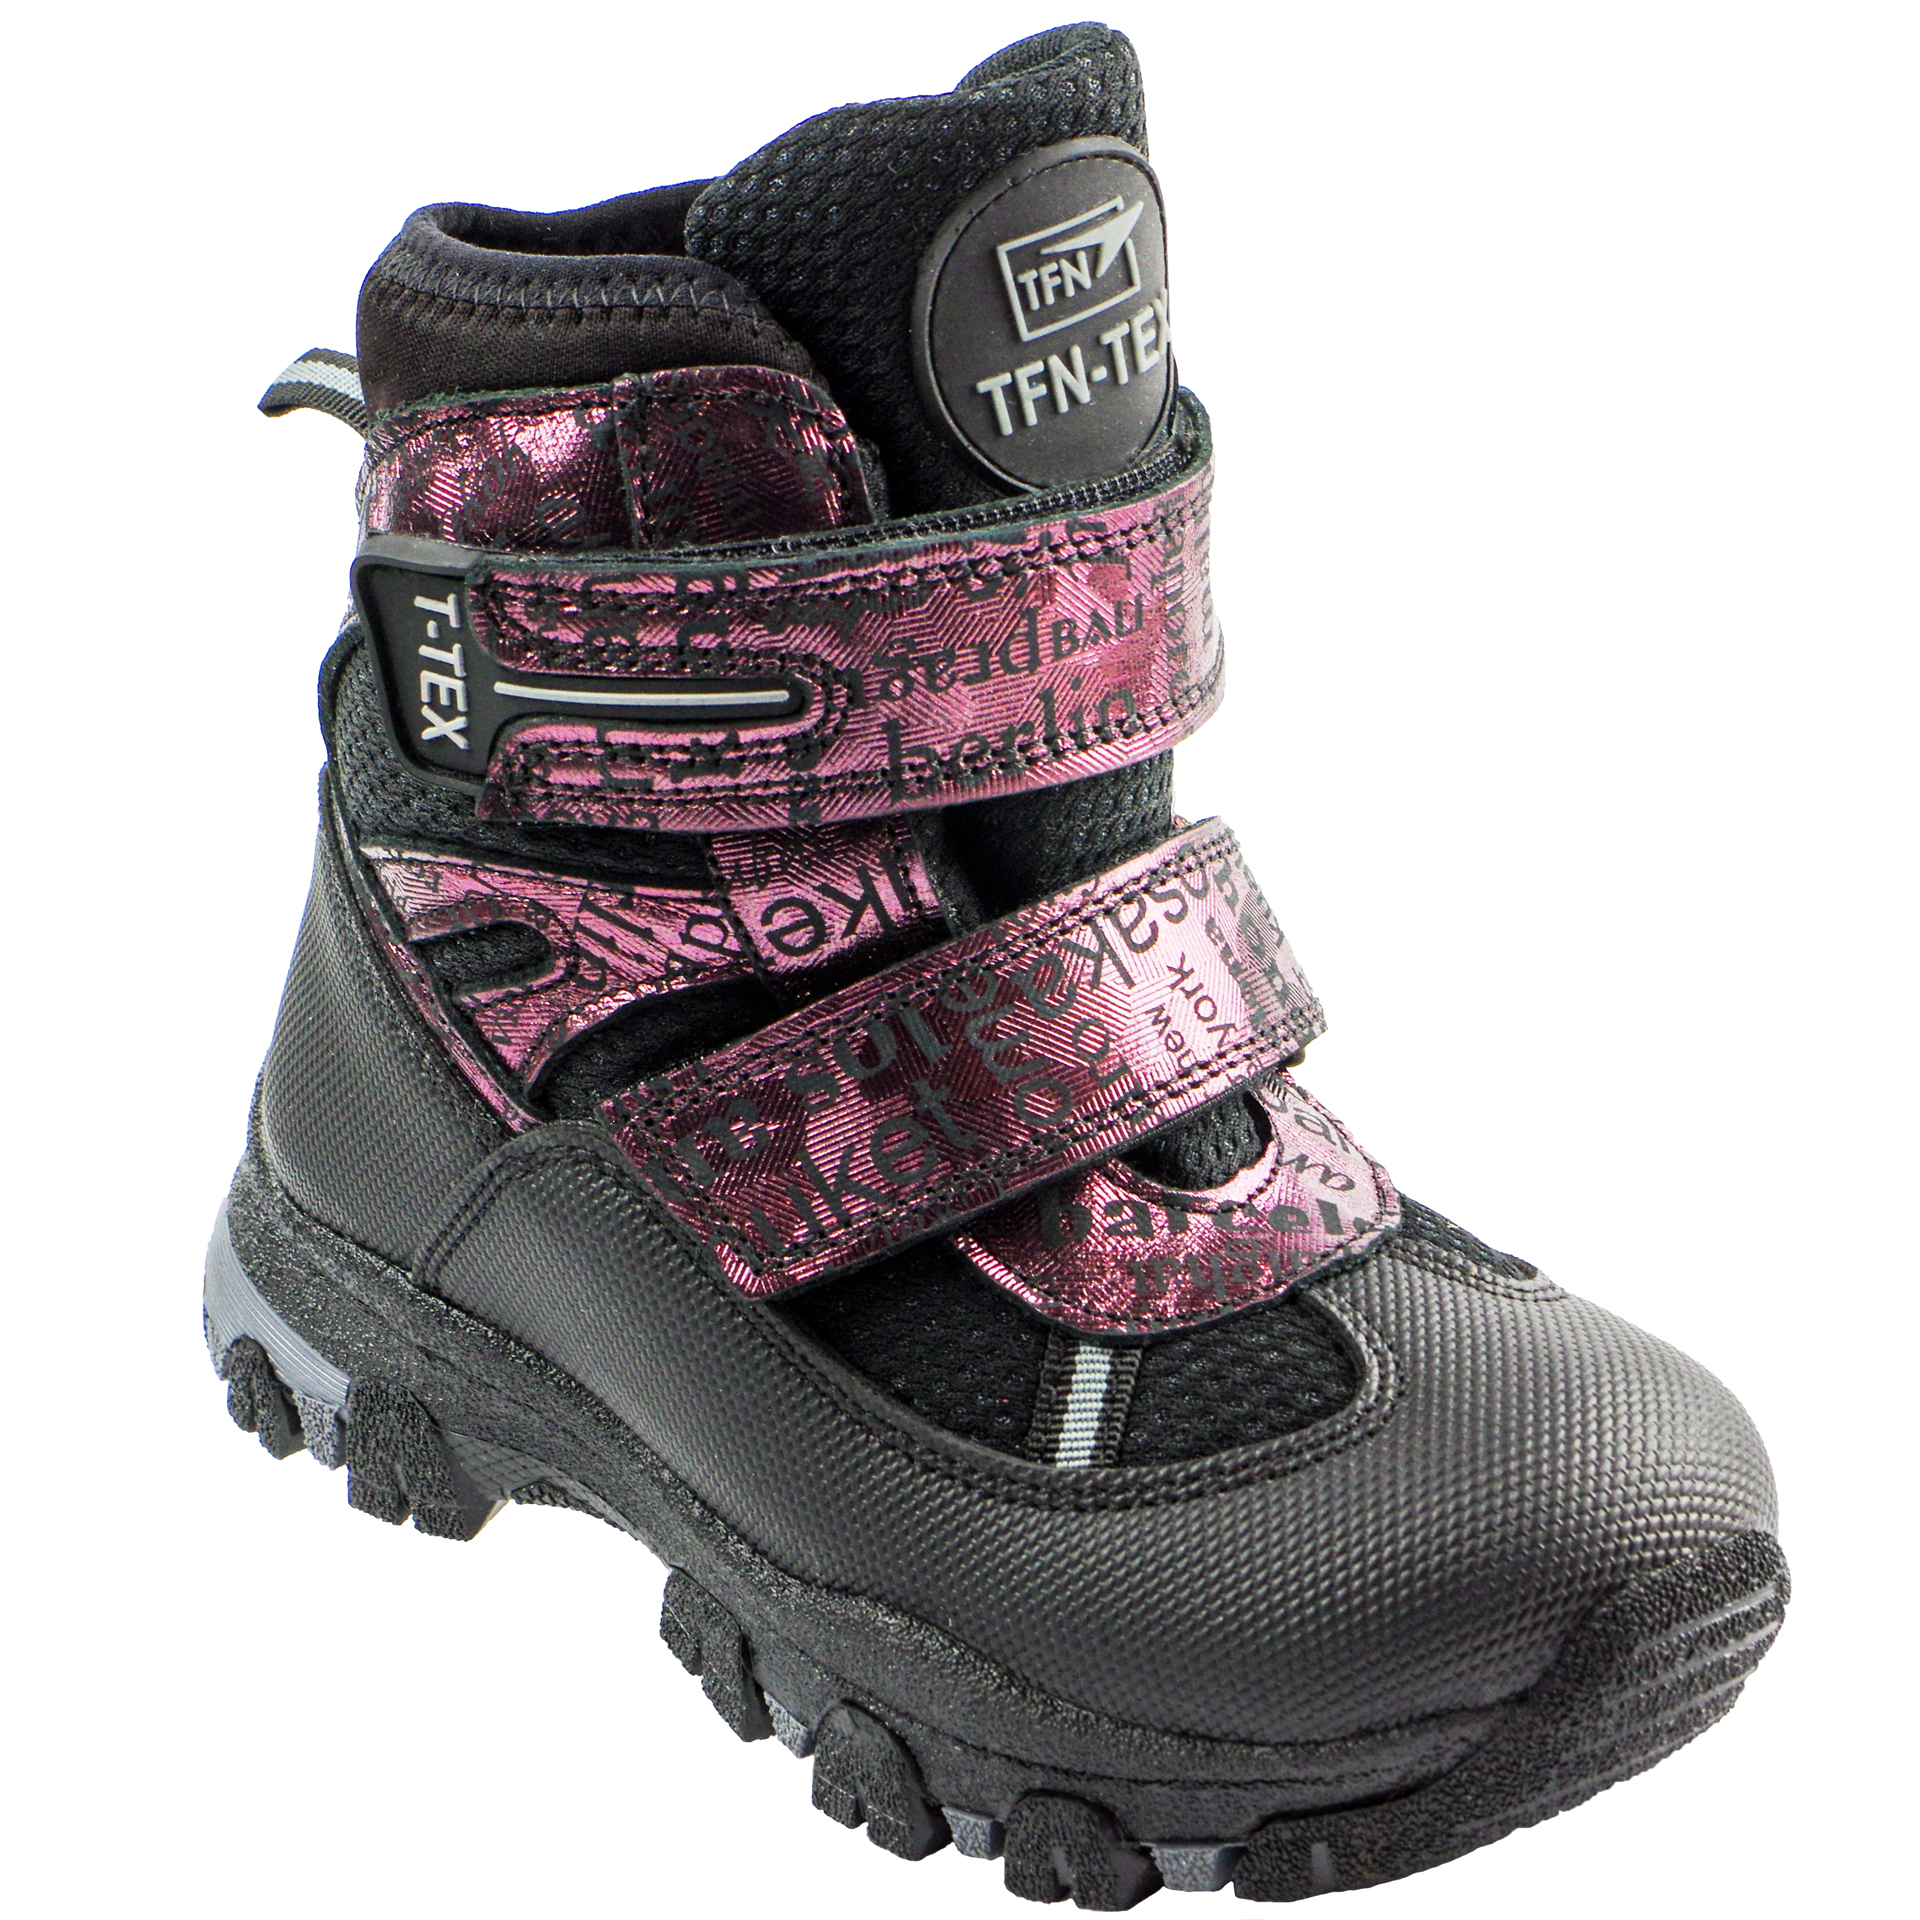 Зимові мембранні черевики (2151) для дівчинки, матеріал Мембрана, Чорний колір, 26-30 розміри – Sole Kids